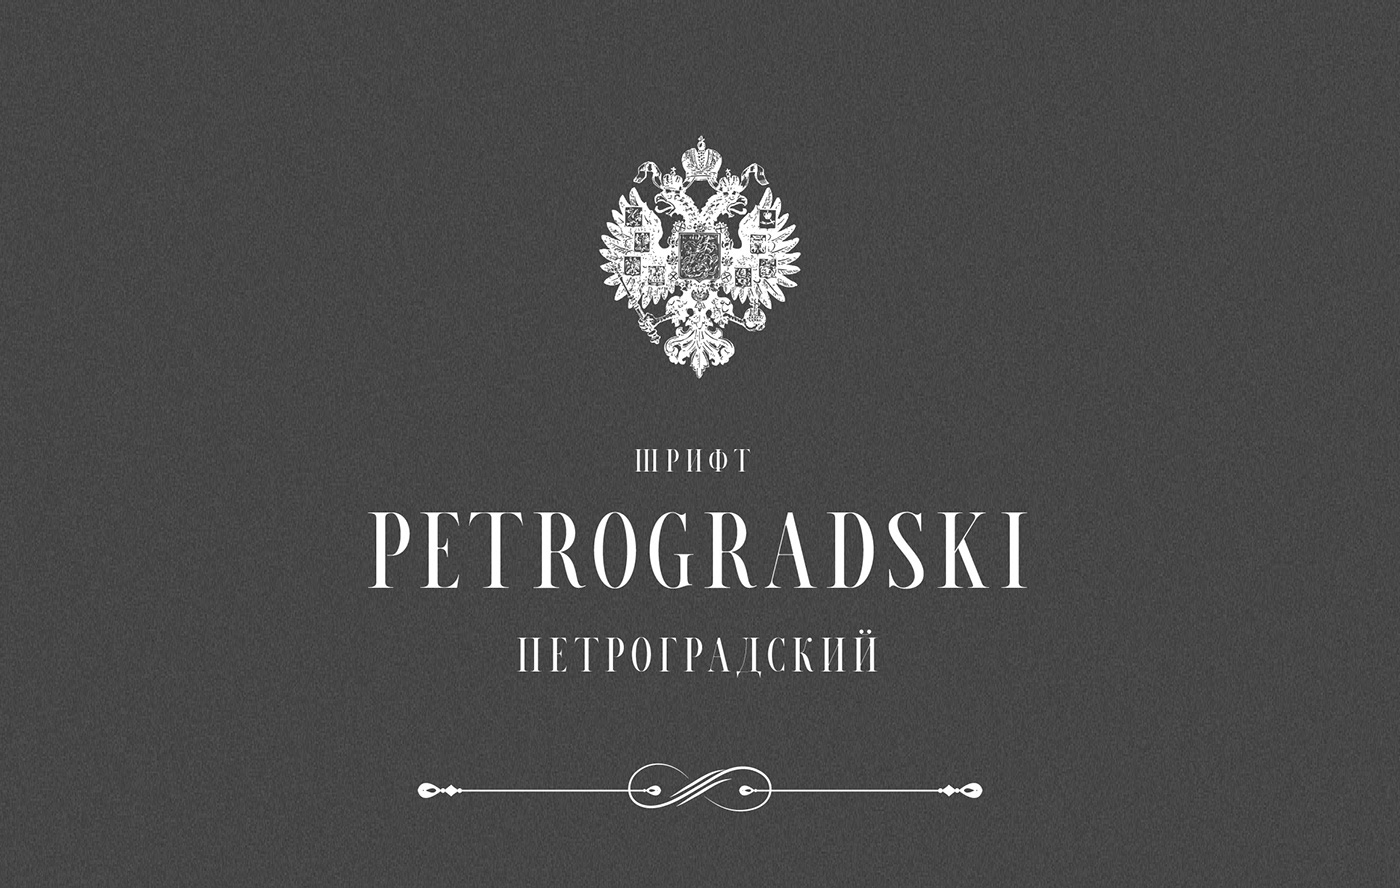 Petrogradski